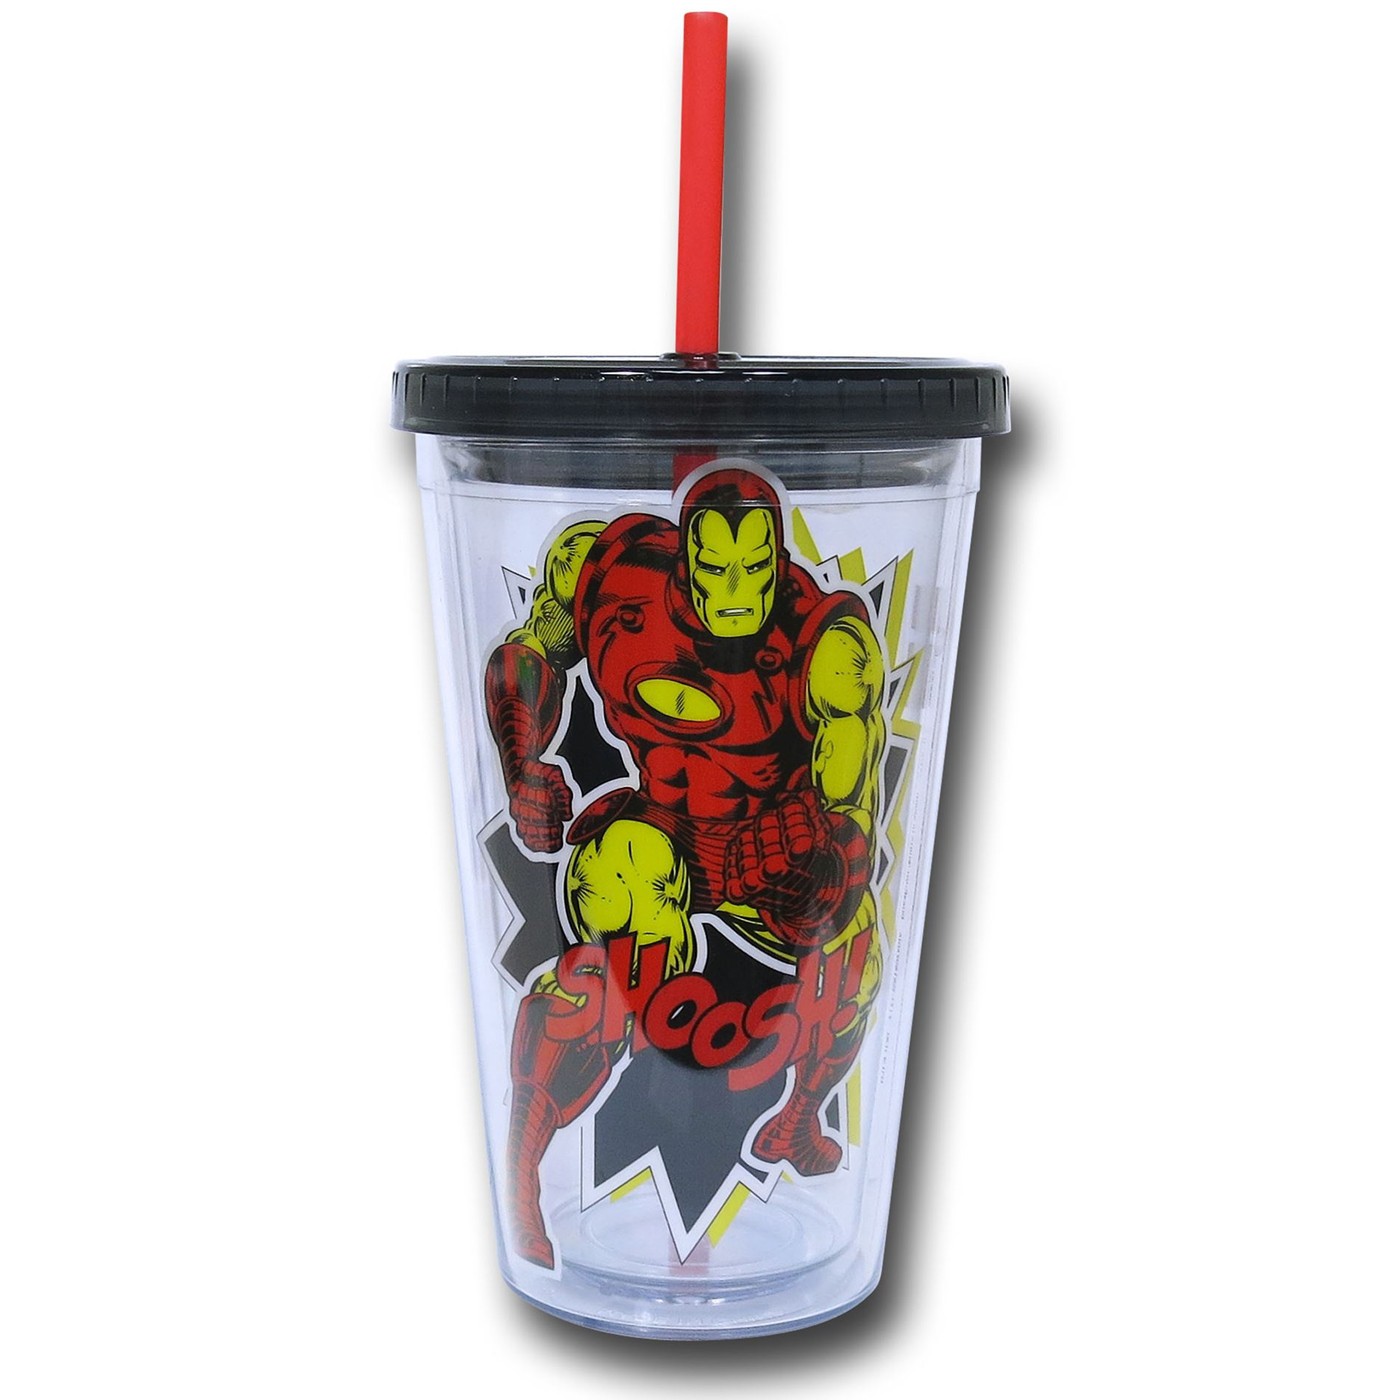 Iron Man 18oz Acrylic Cold Cup